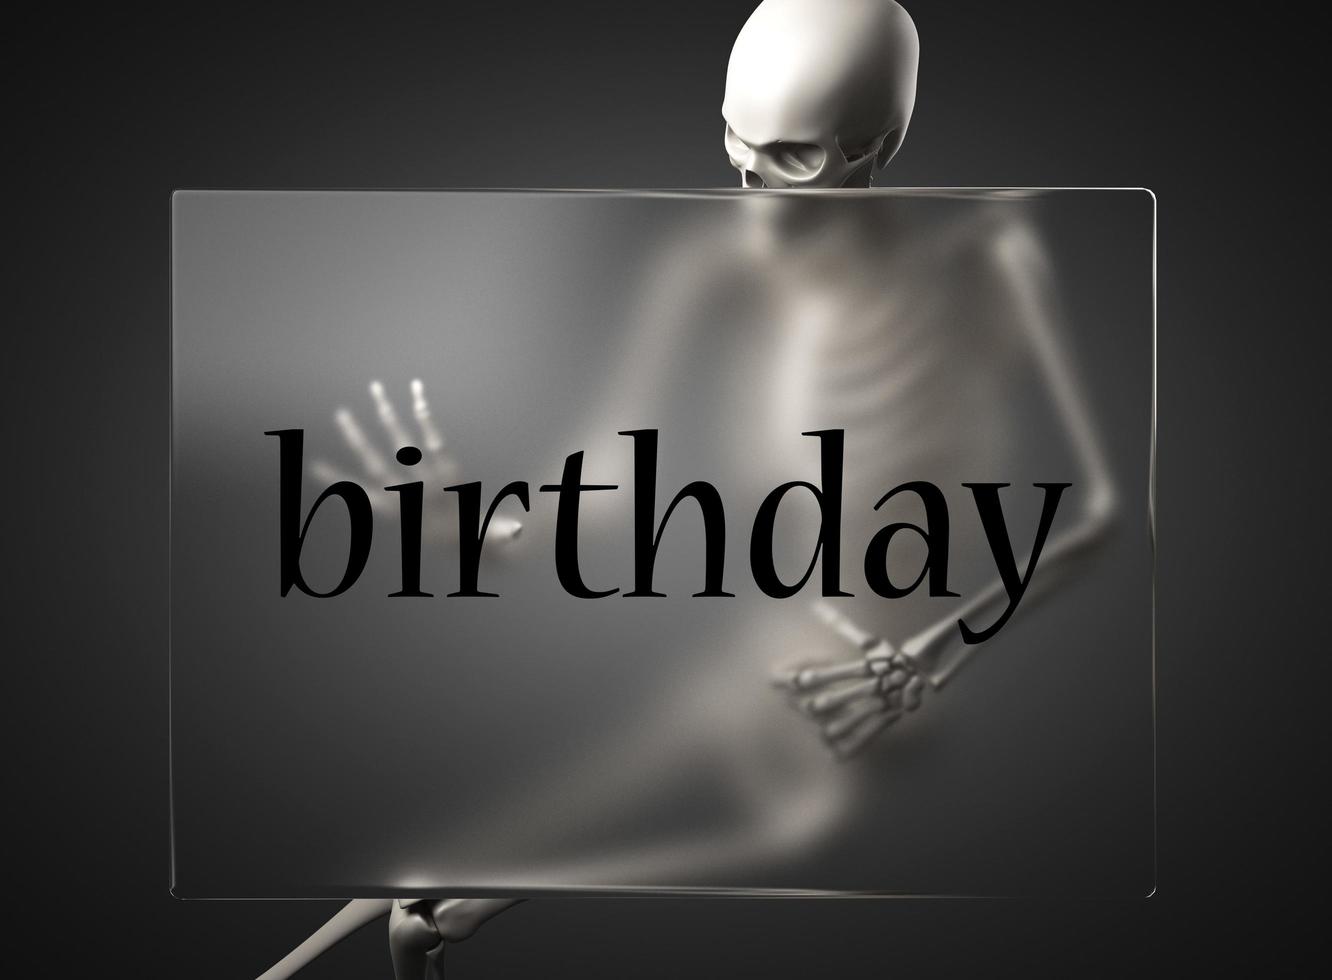 födelsedagsord på glas och skelett foto